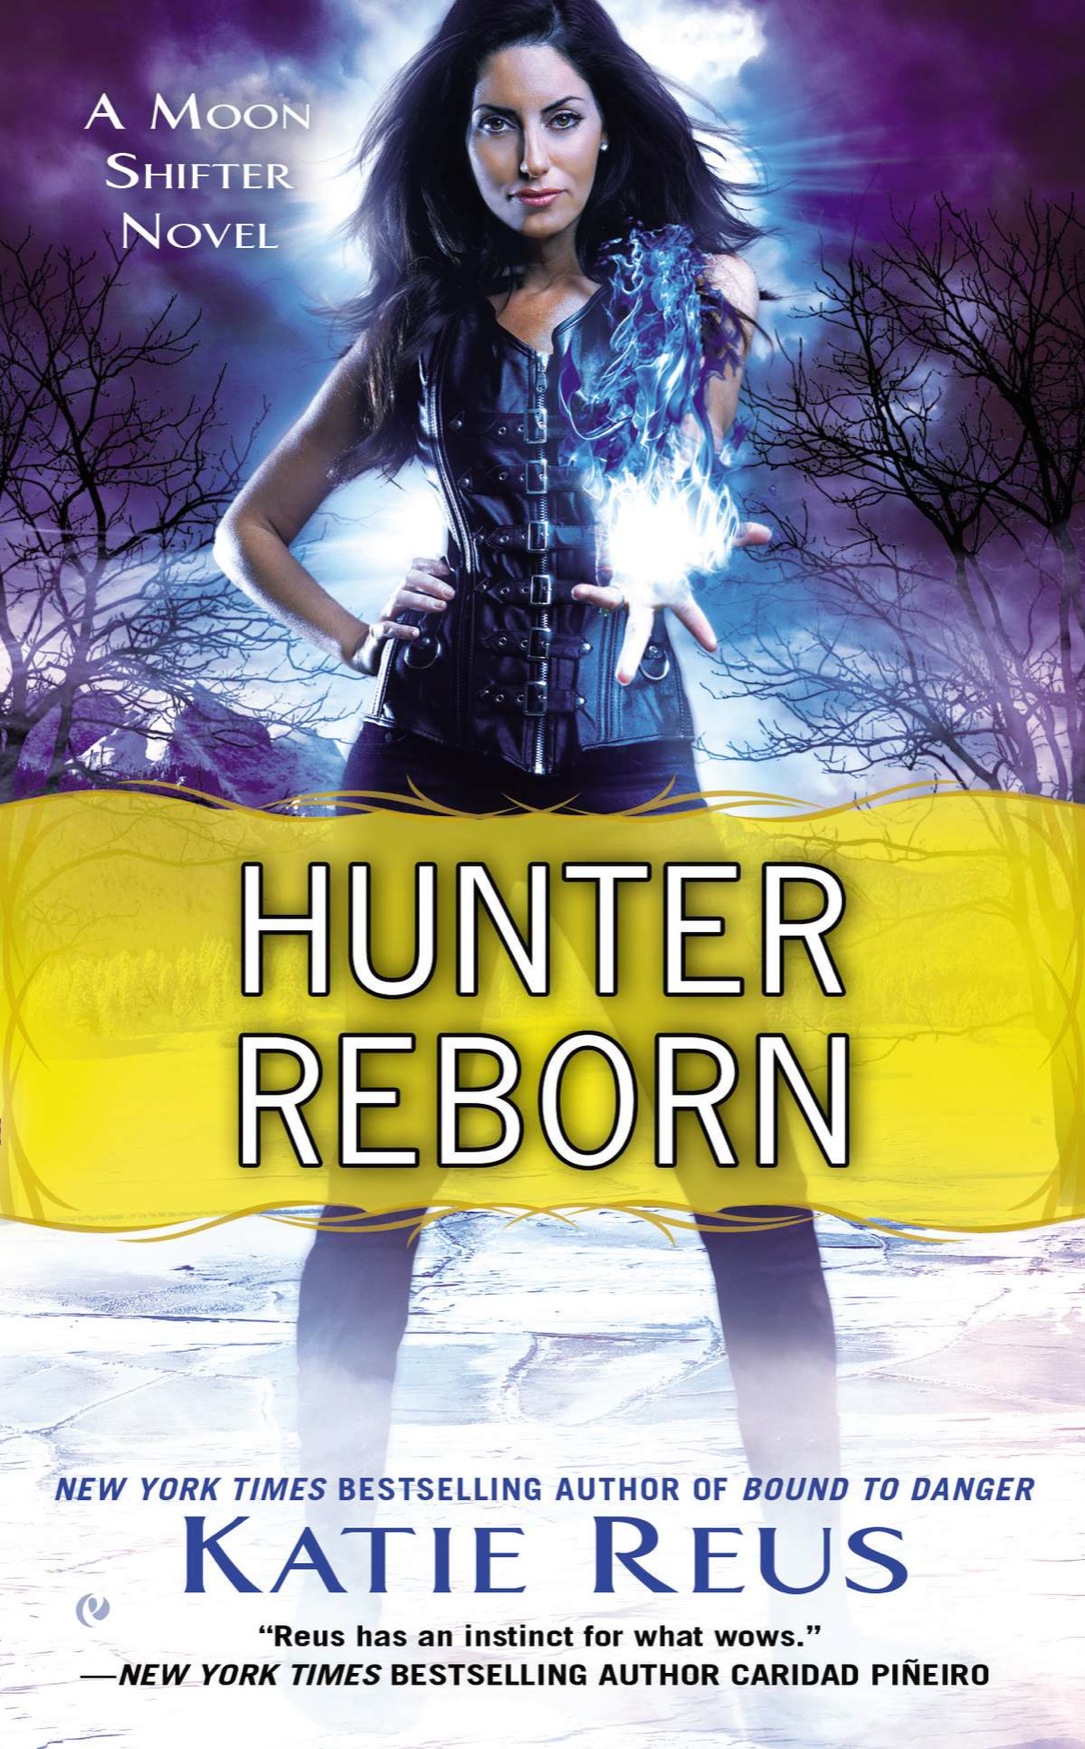 Hunter Reborn (2015) by Katie Reus